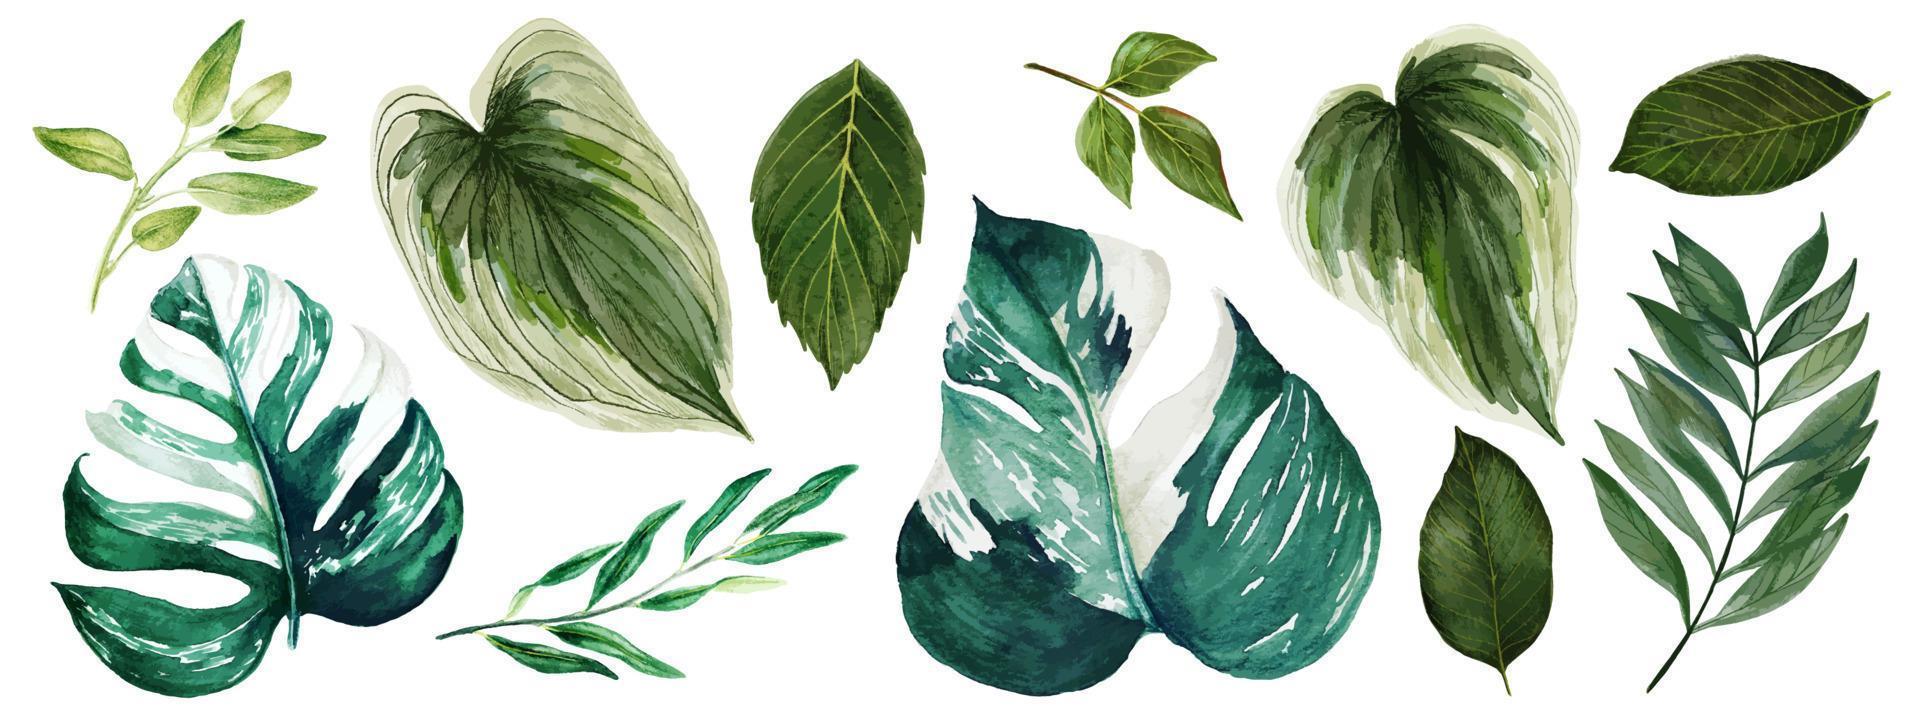 hojas de monstera, colección de vegetación brillante acuarela, ilustración vectorial dibujada a mano. vector